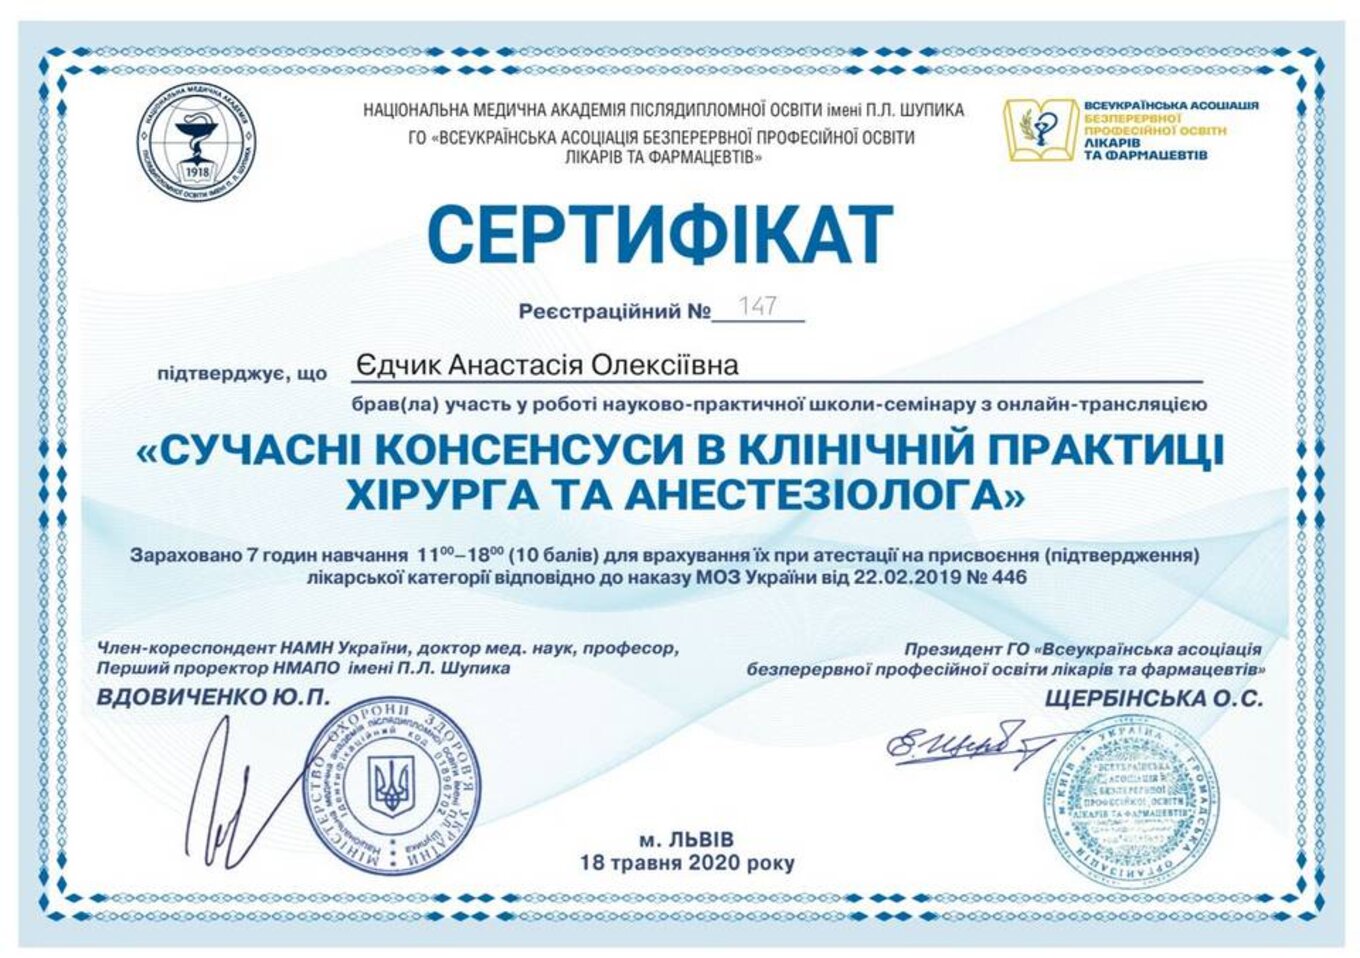 certificates/yedchik-anastasiya-oleksiyivna/erc-edchik-cert-19.jpg